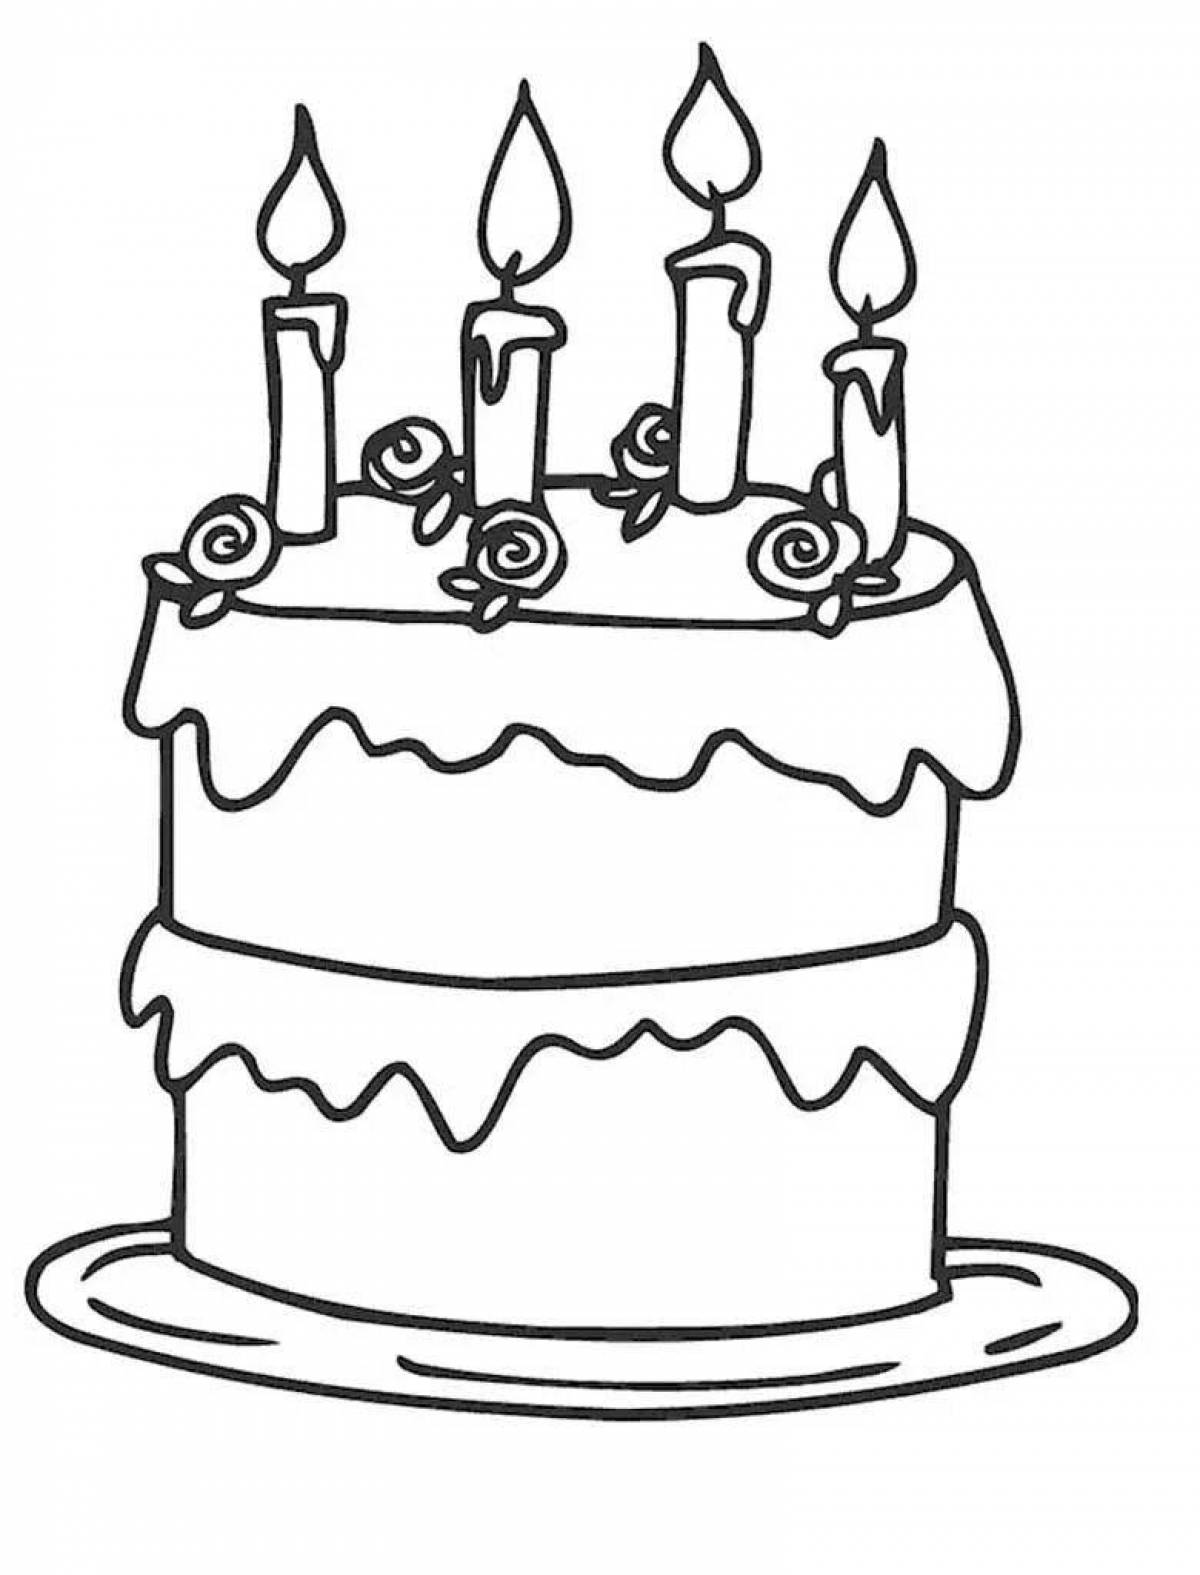 Торт распечатать а4. Раскраска торт. Торт раскраска для детей. Раскраска "с днем рождения!". Раскраска торт на день рождения.